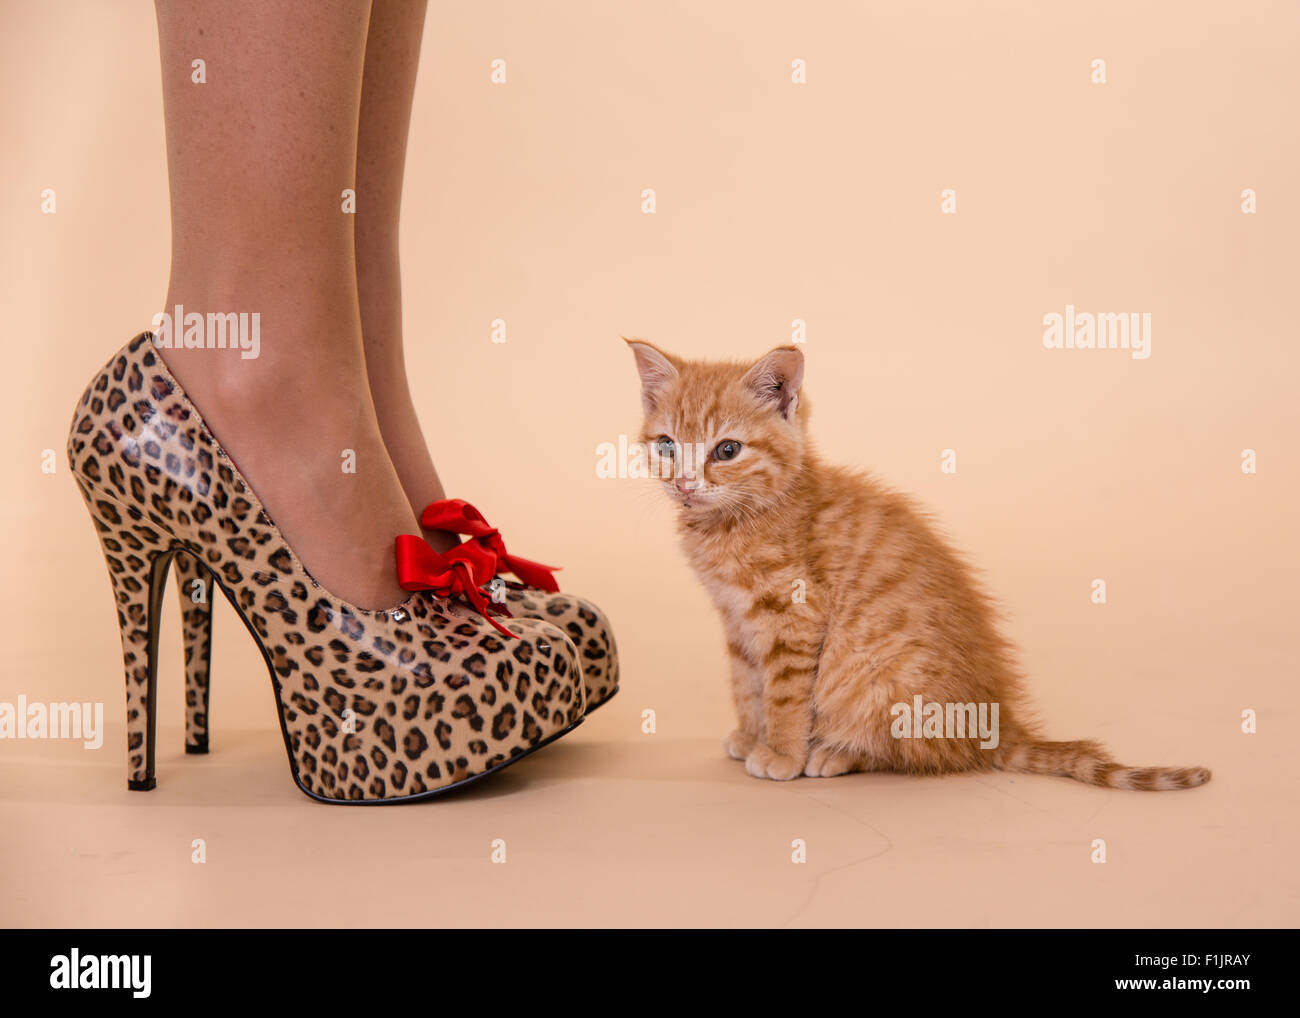 tiny kitten heels